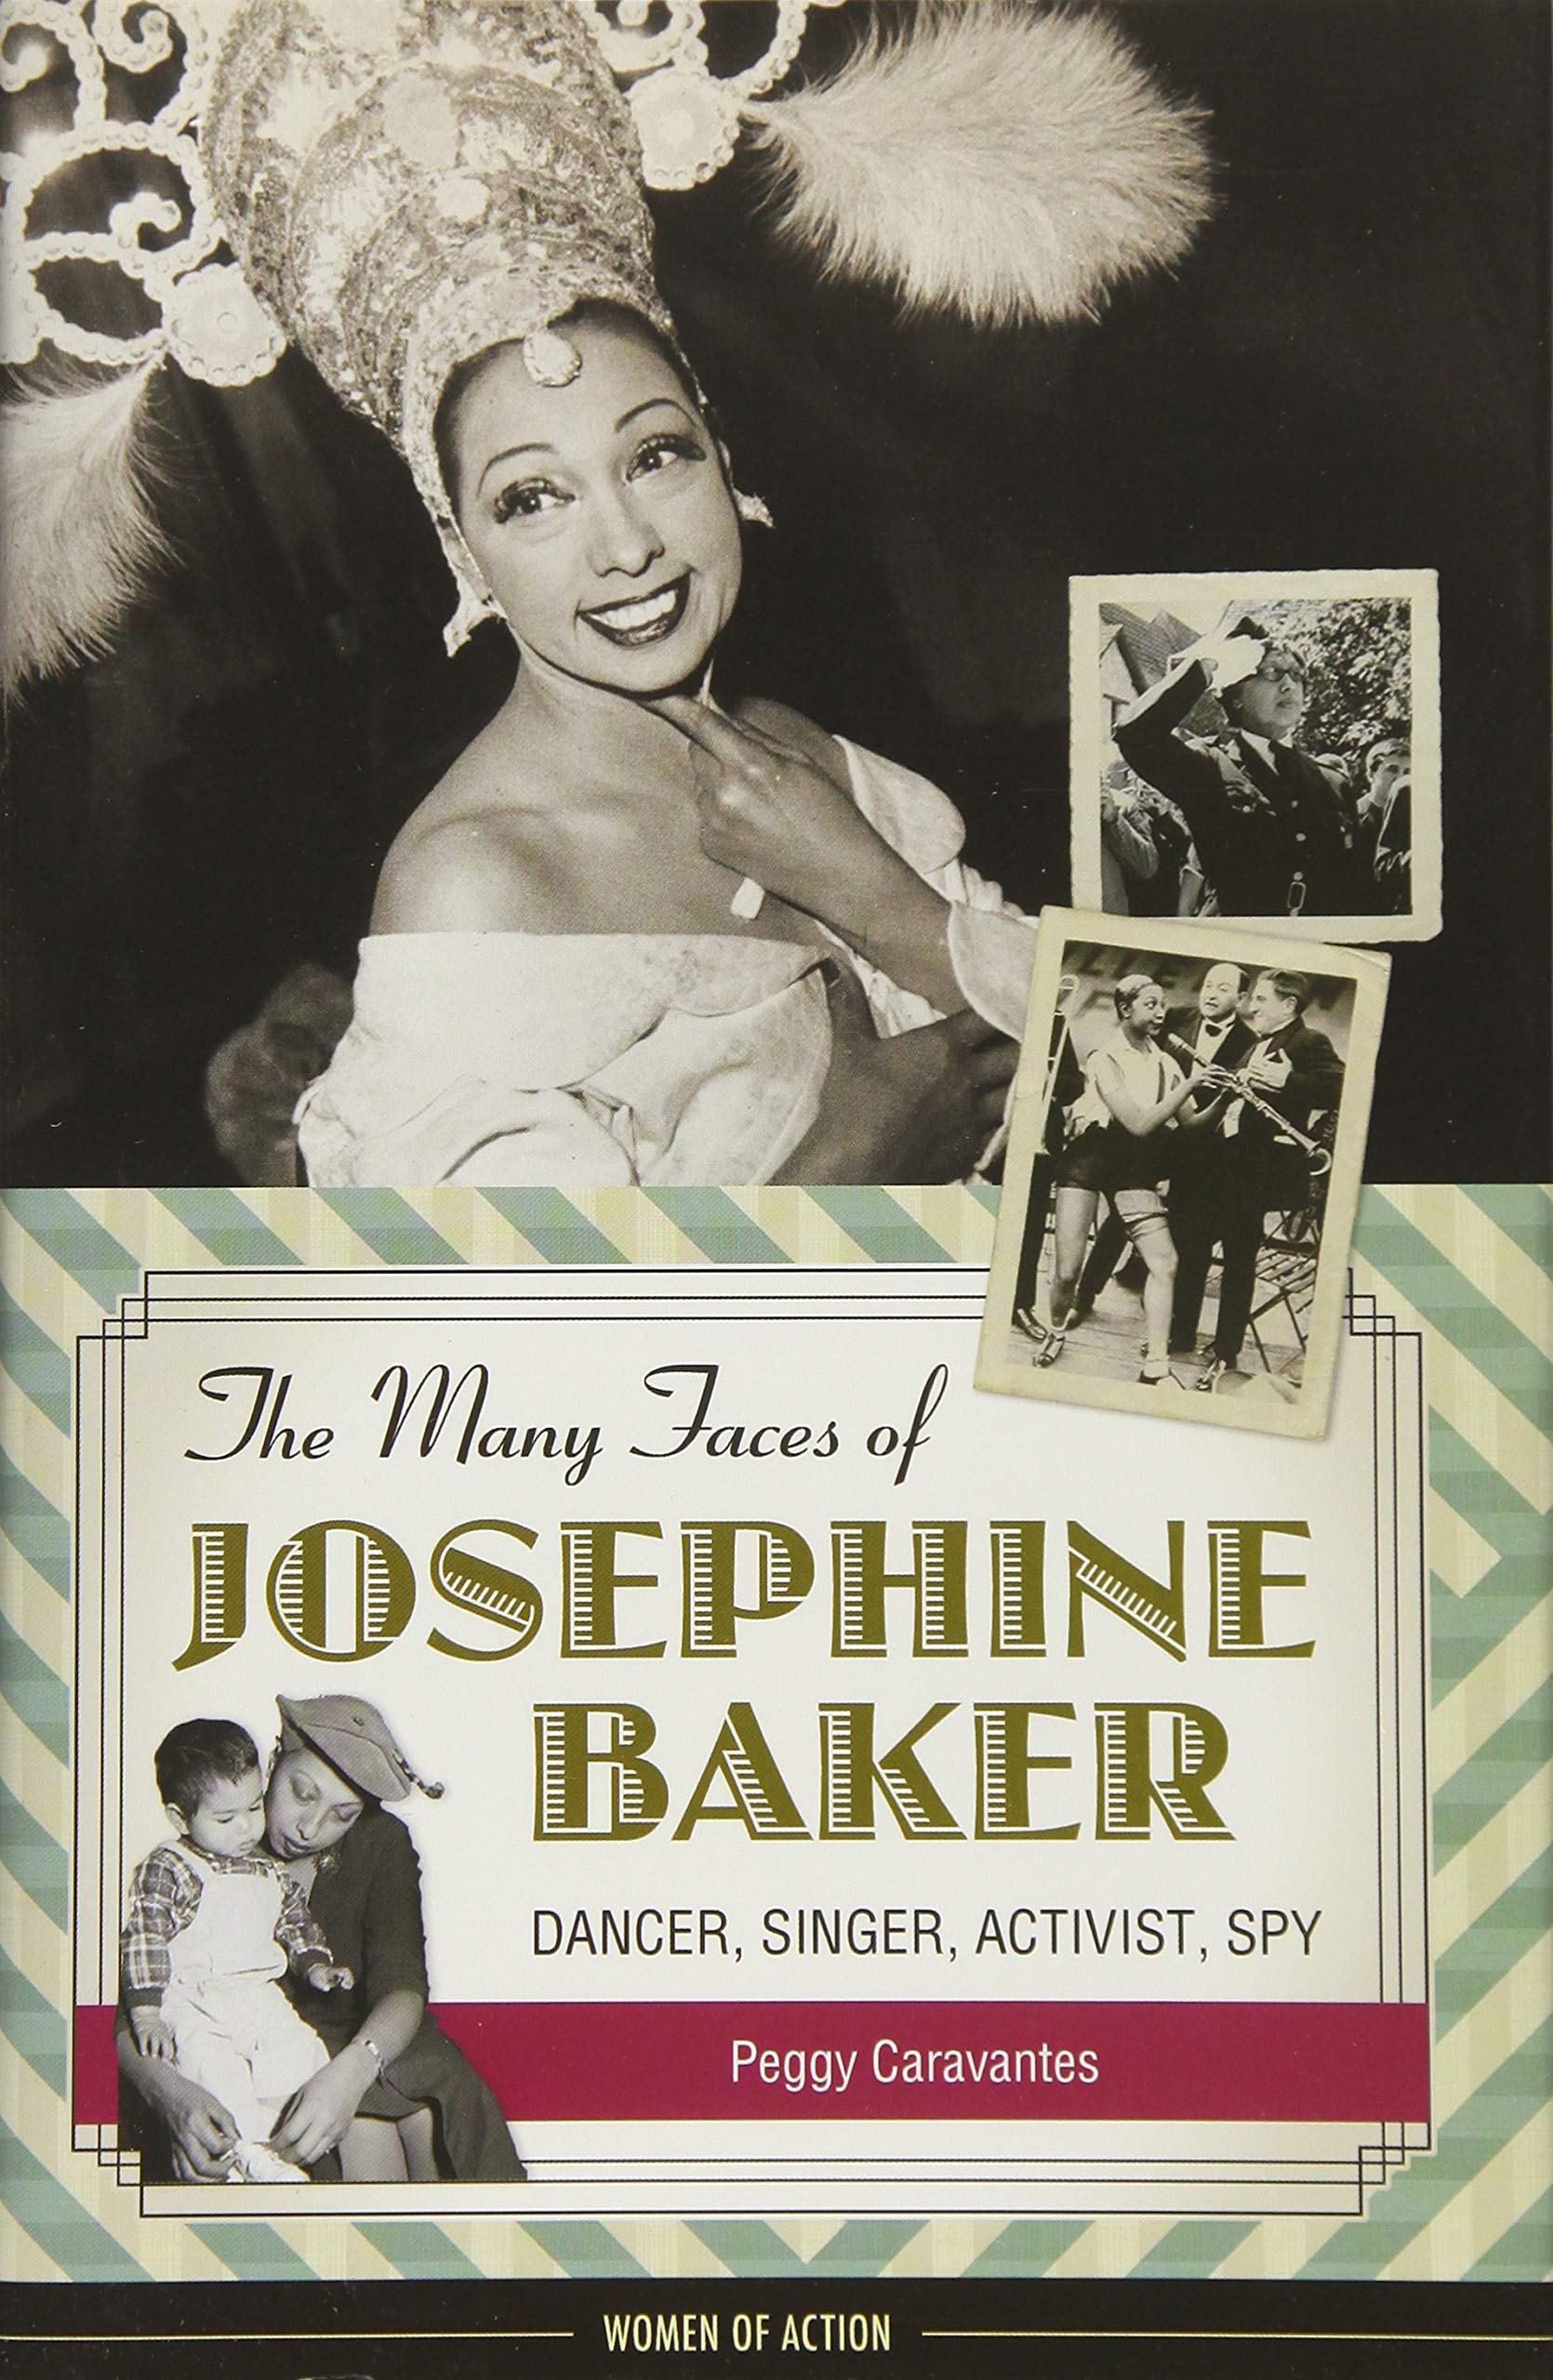 The Many Faces of Josephine Baker: Dancer, Singer, Activist, Spy